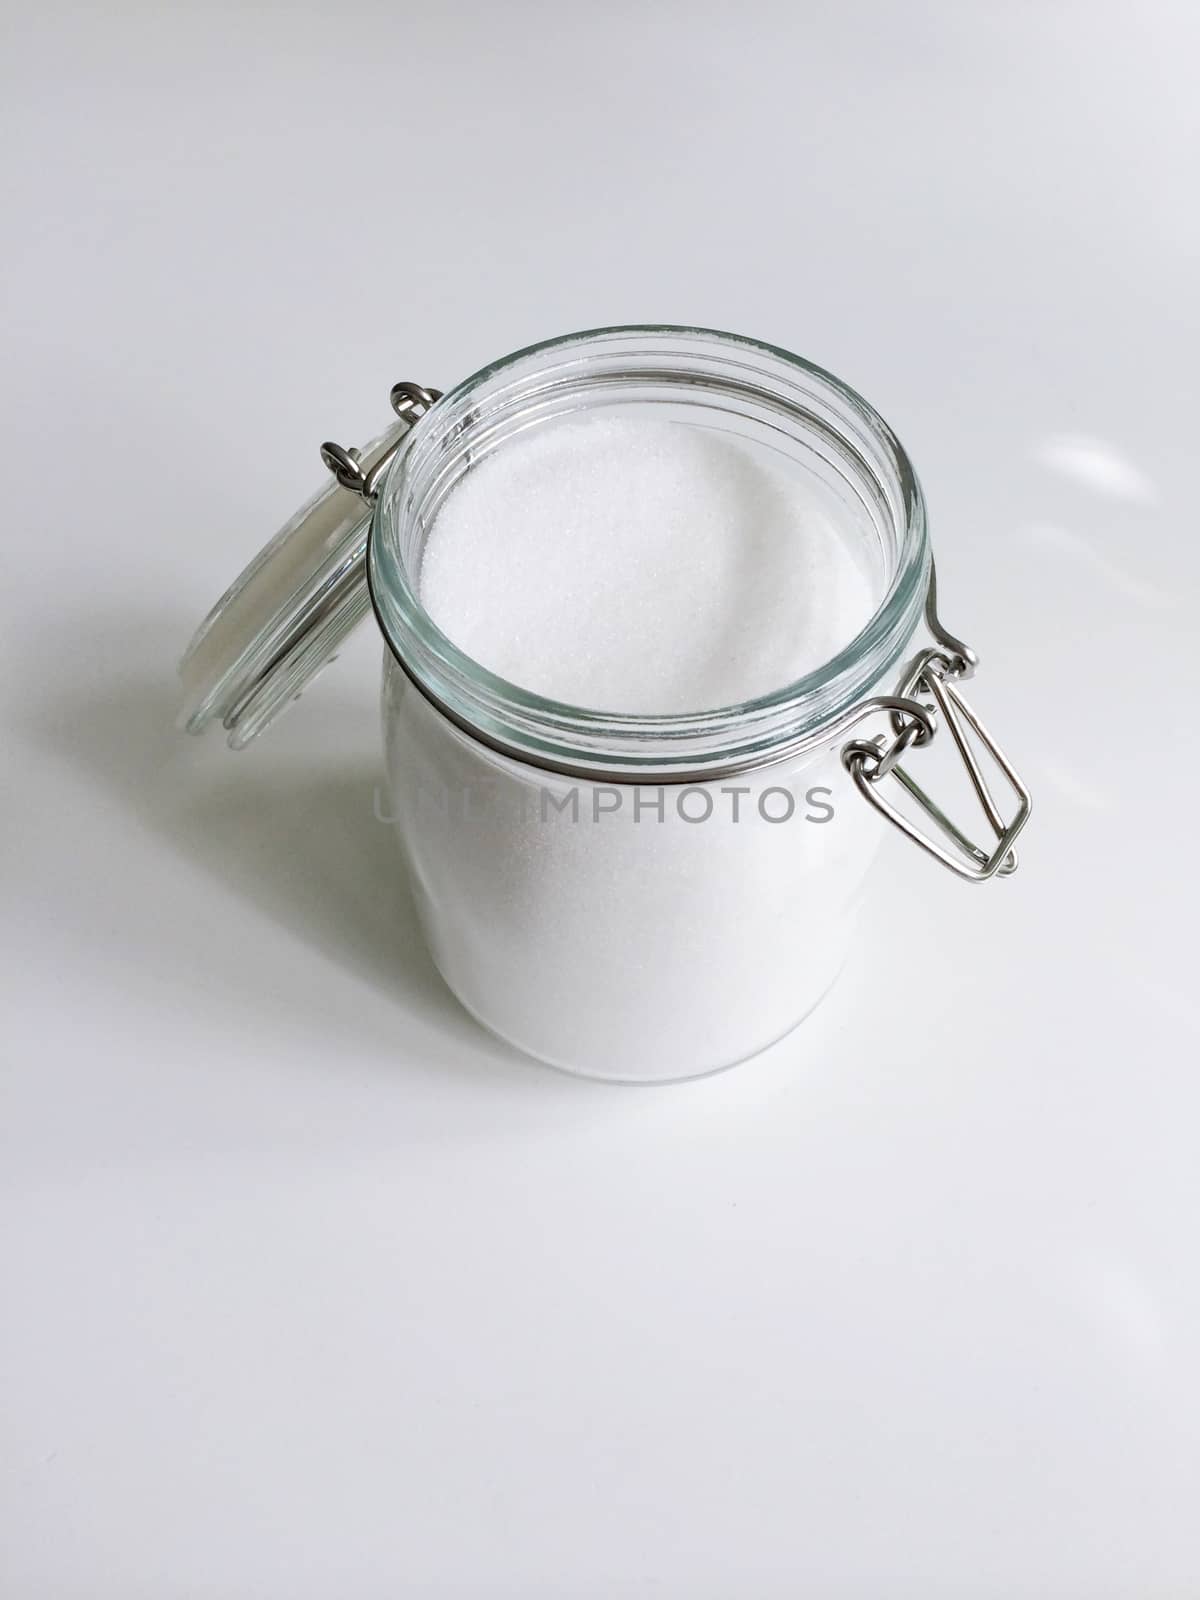 Jar of granulated sugar by mmm